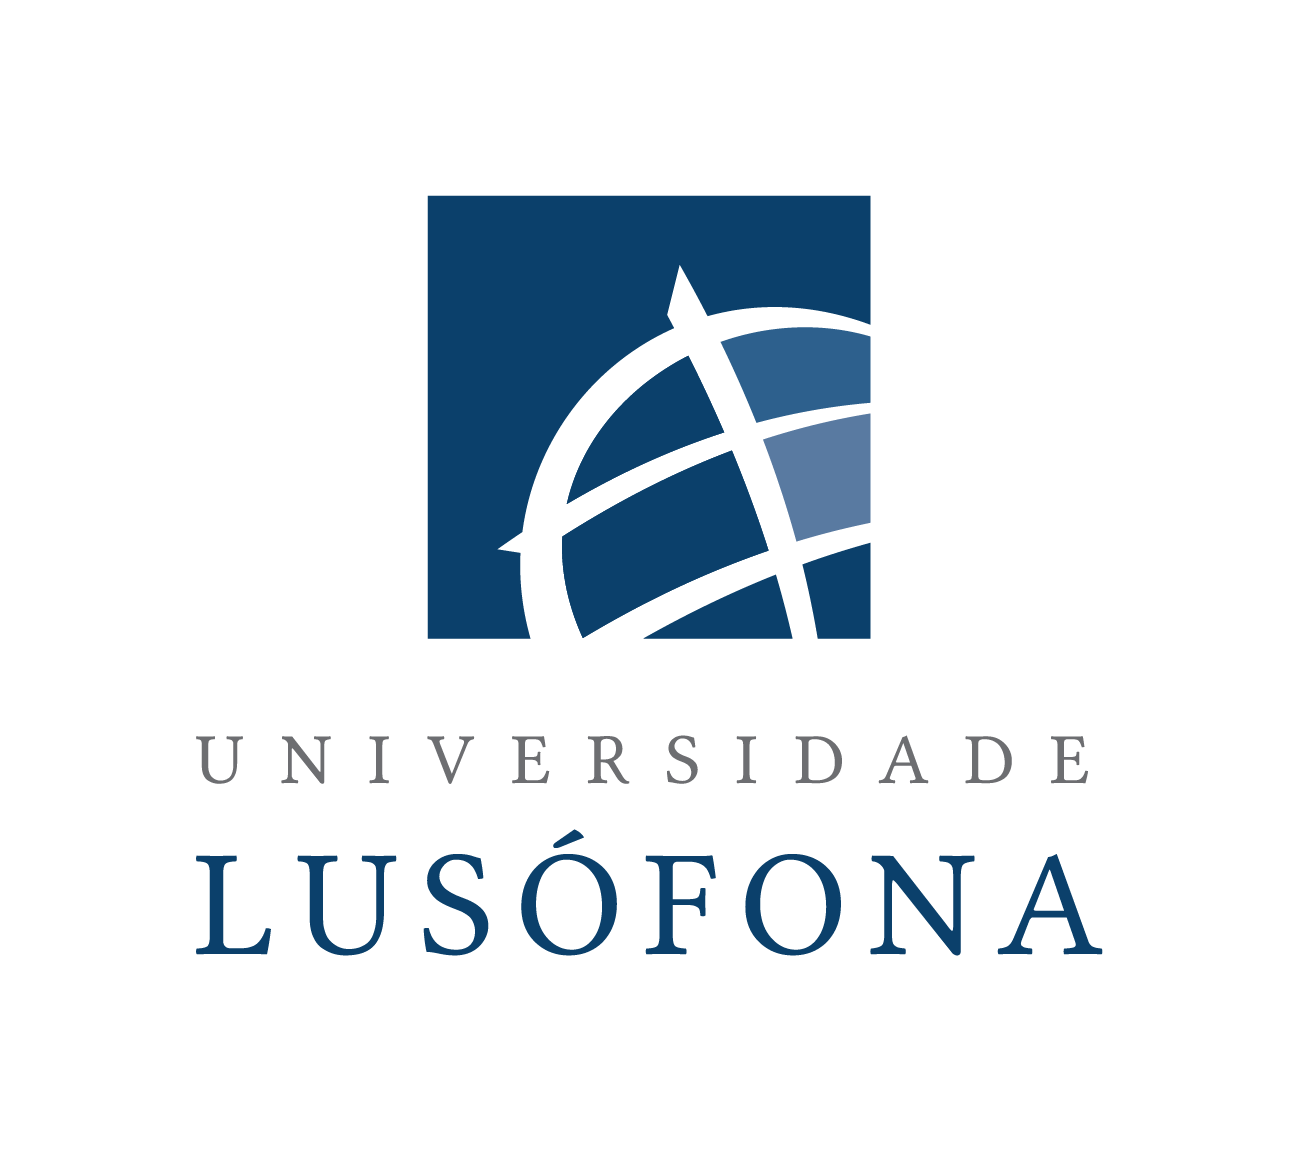 Universidade Lusófona de Humanidades e Tecnologias